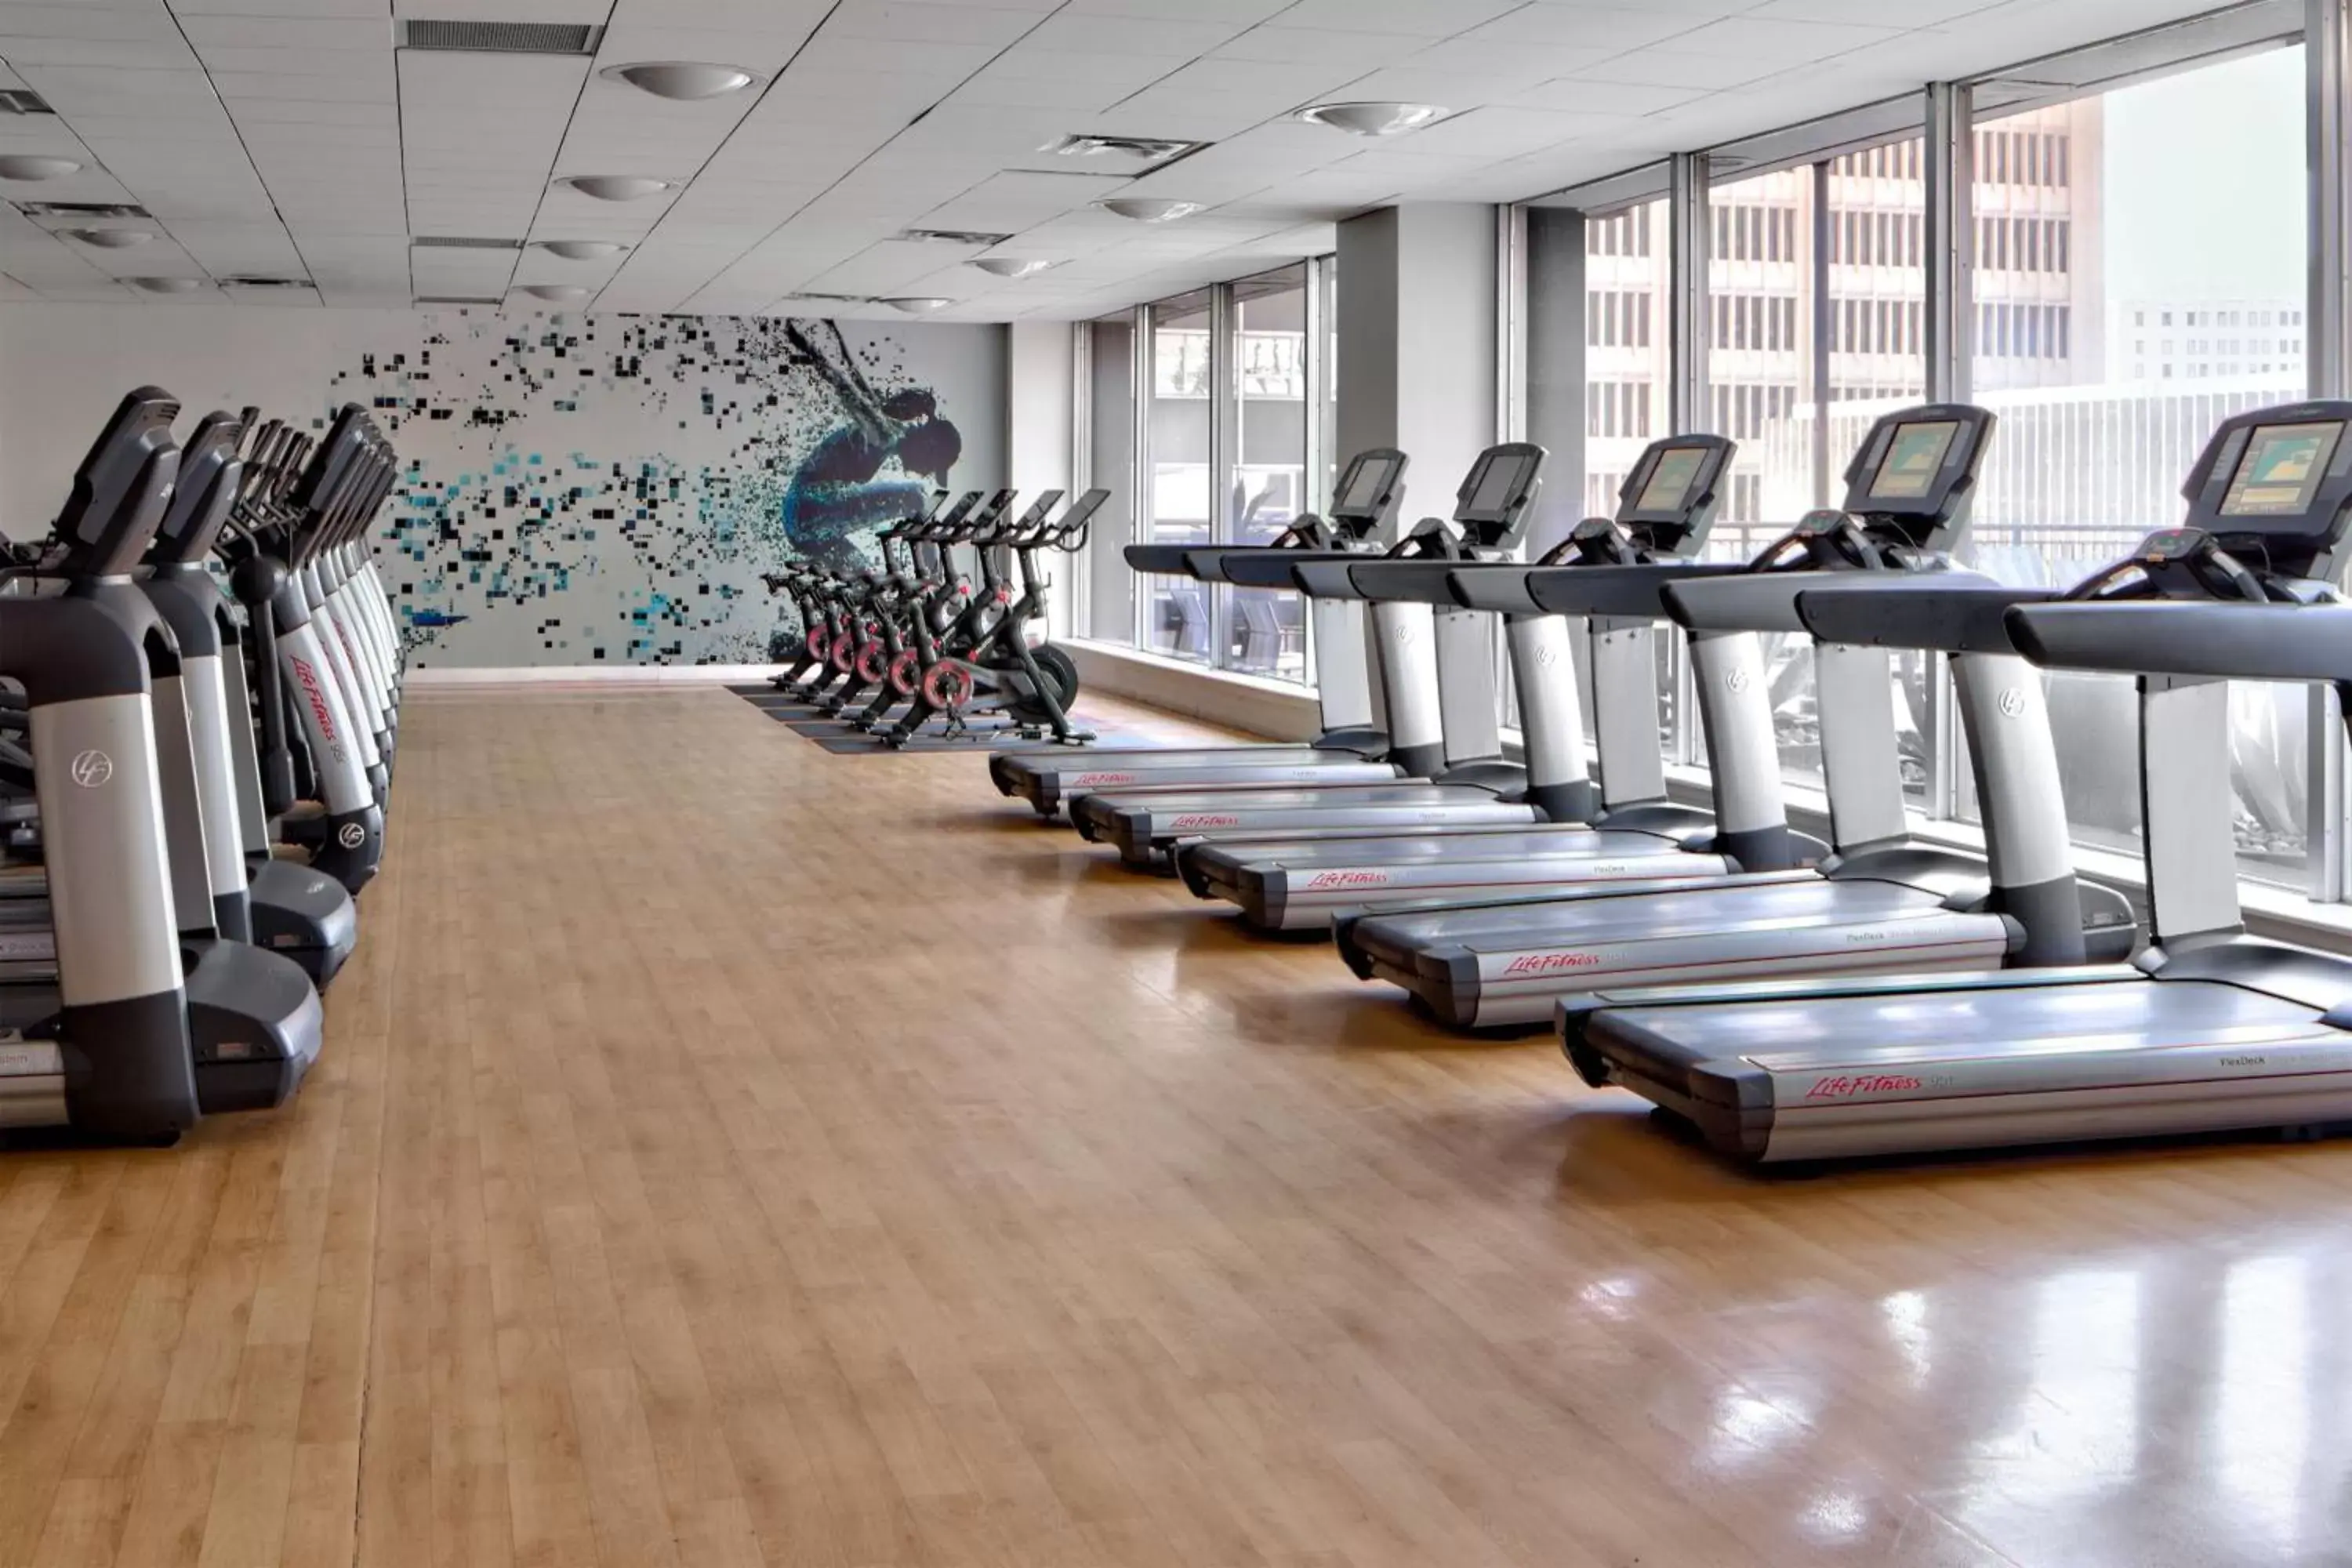 Fitness centre/facilities, Fitness Center/Facilities in Sheraton Dallas Hotel